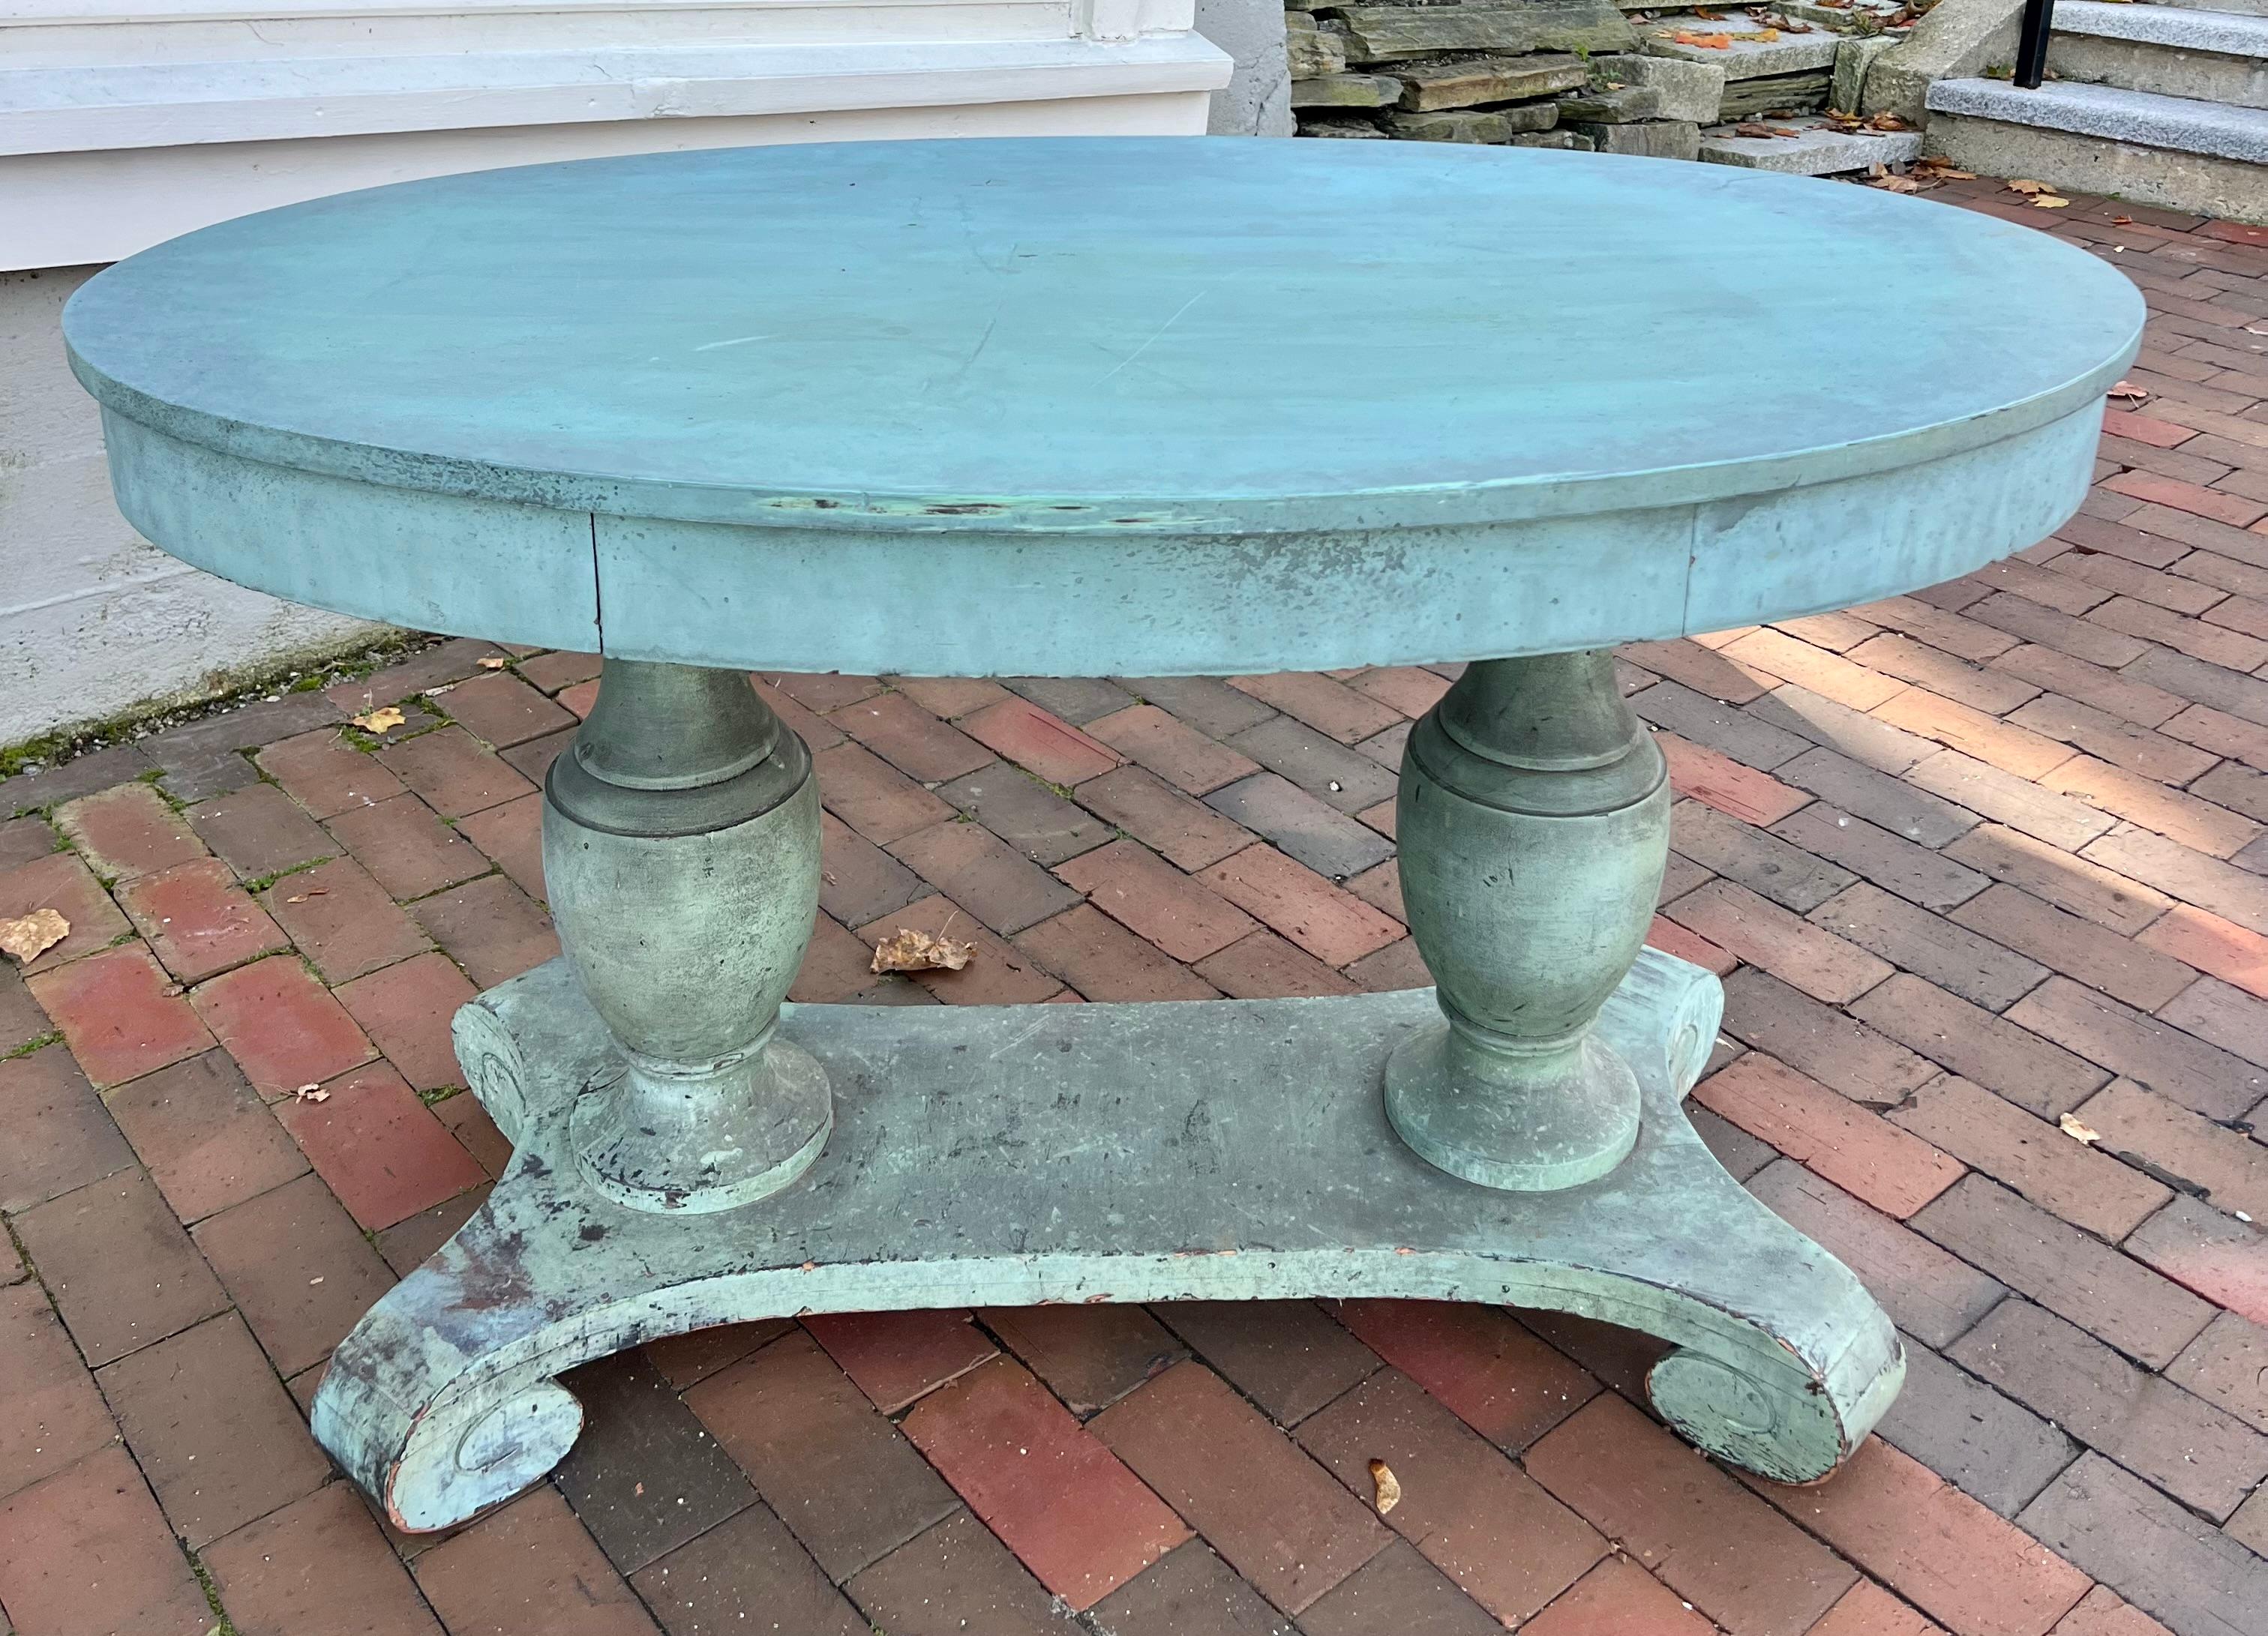 Amerikanischer Tisch aus dem frühen 19. Jahrhundert in fabelhafter früher blauer Farbe.  Mit einem Paar bauchiger Urnenstützen, die auf einer Bahre mit geschnitzten Füßen ruhen.  Die Farbe erinnert an die schwedisch-gustavianische Zeit, und die